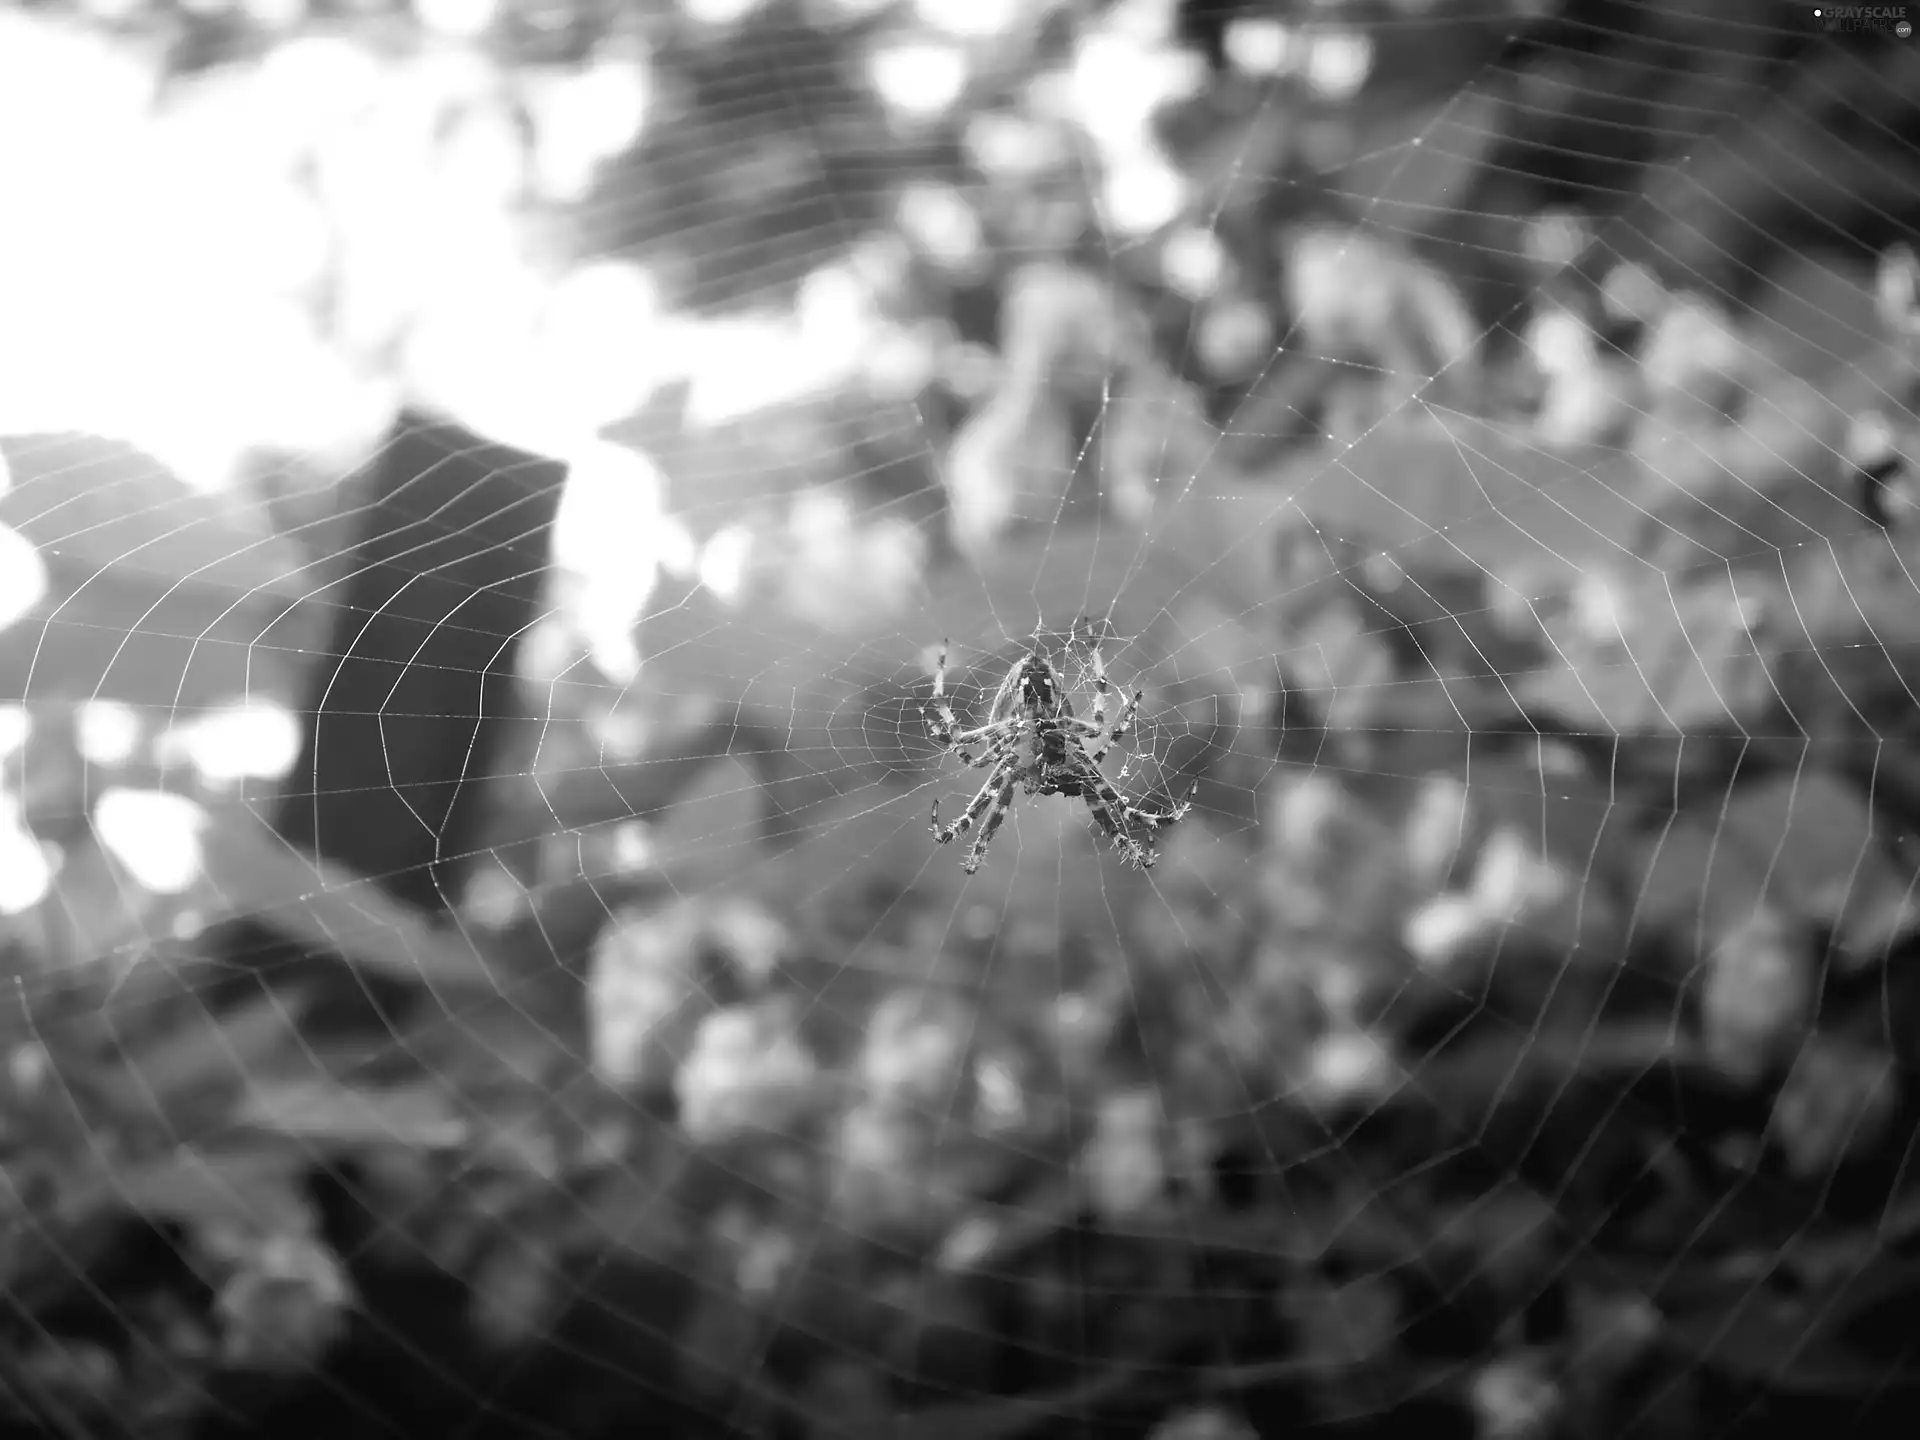 net, Spider, trestle